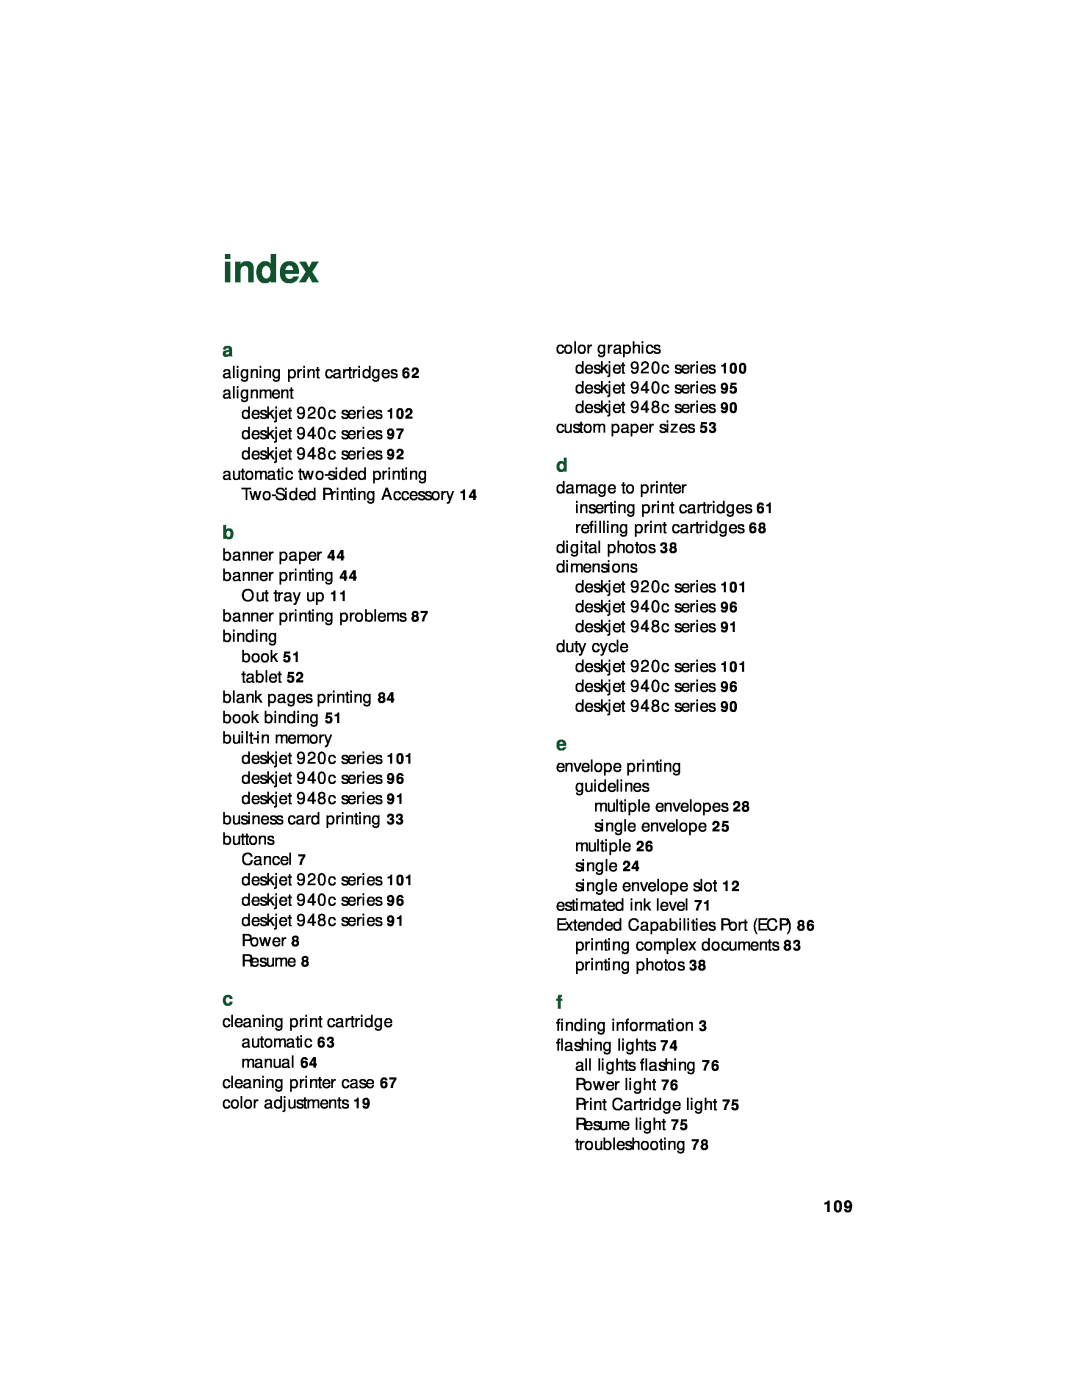 HP 920c, 948c, 940c manual index 